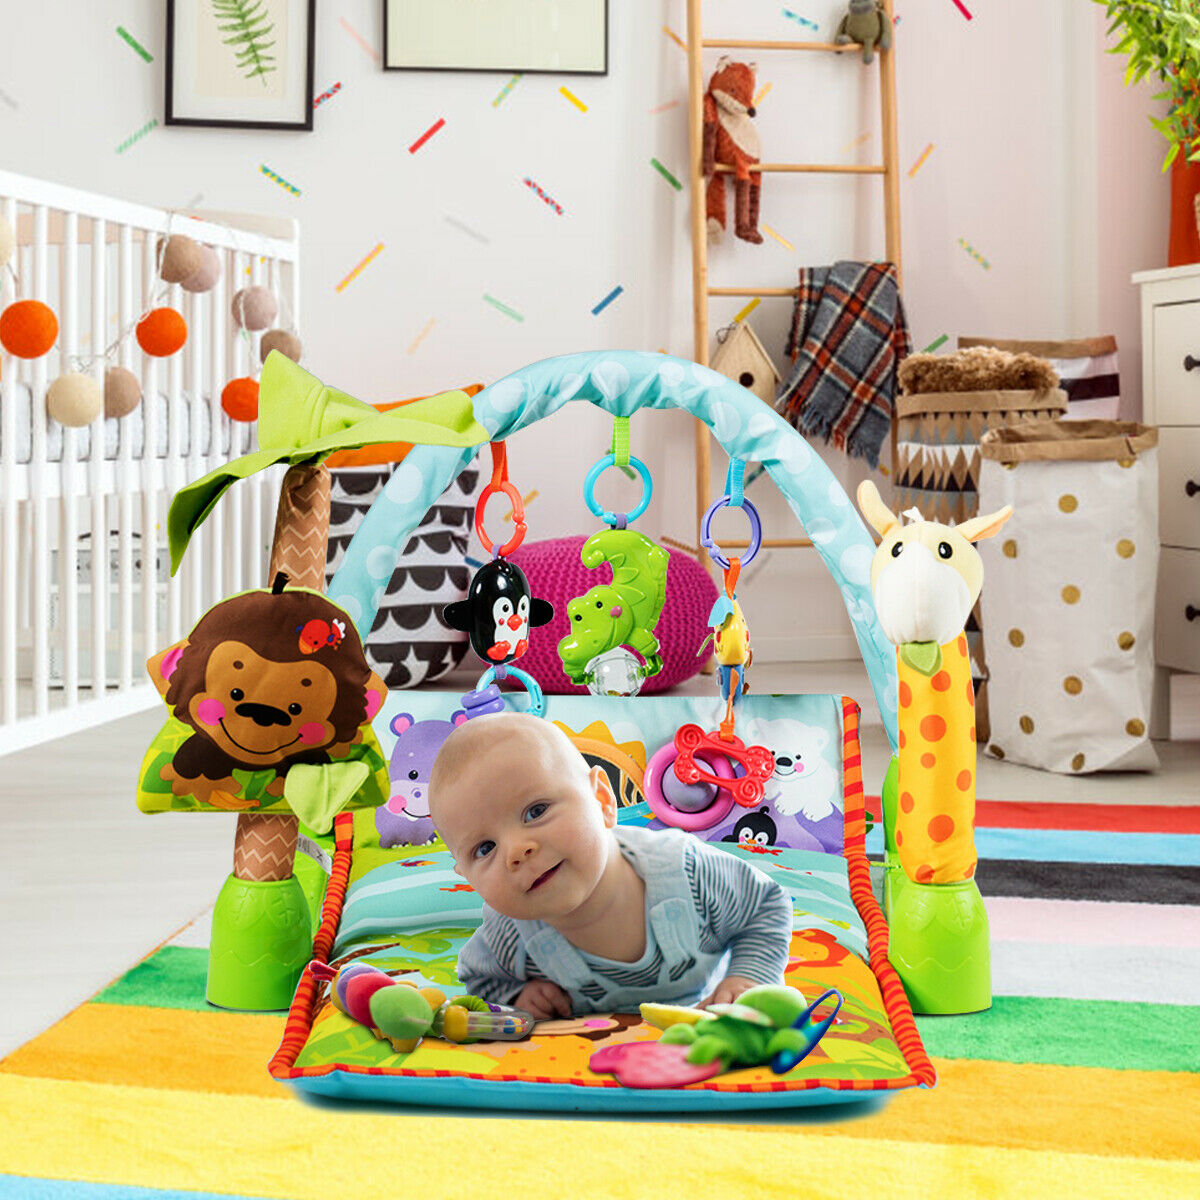 baby activity center mat